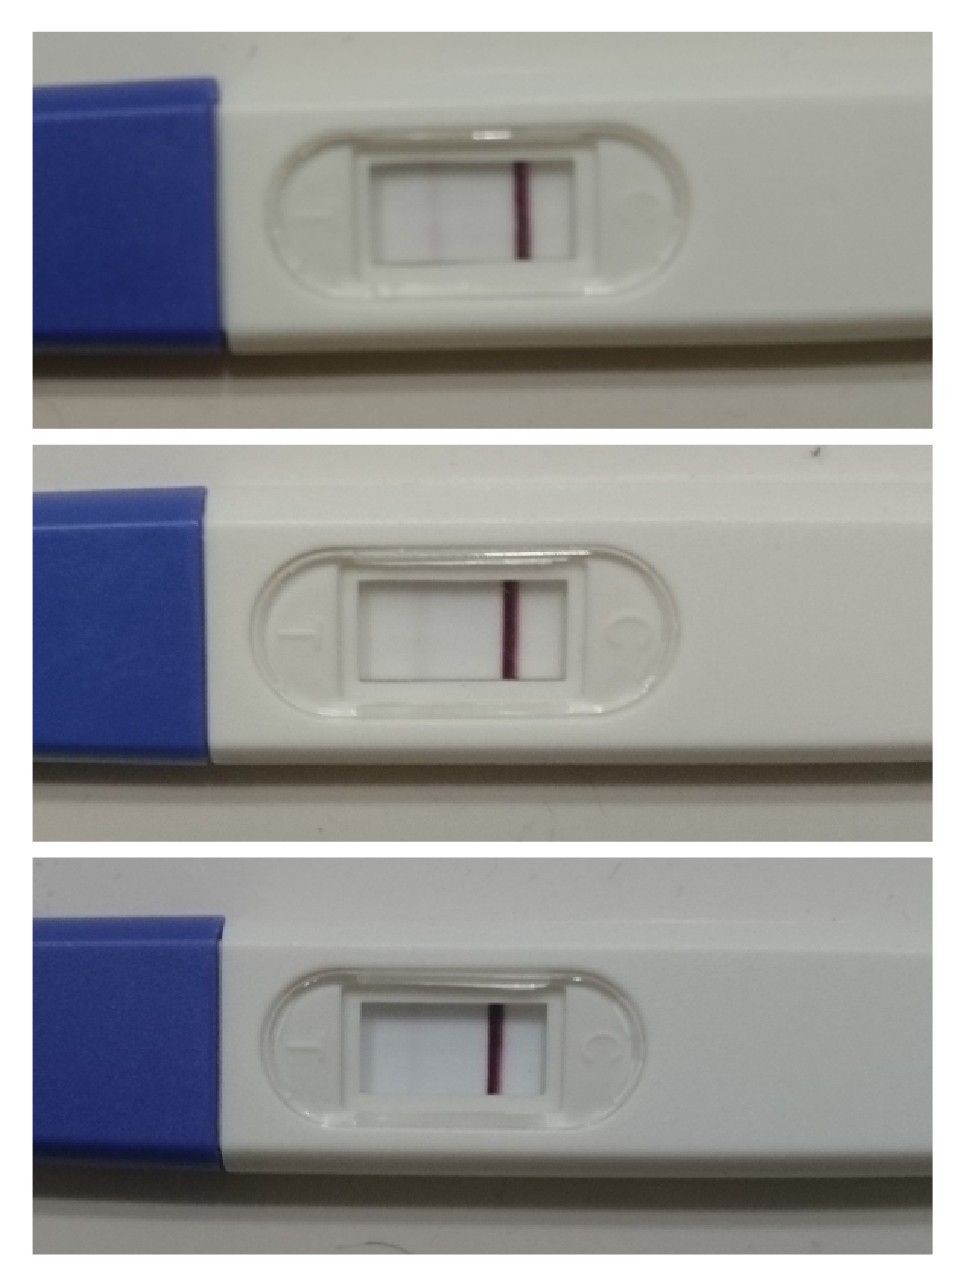 Vos tests à 10 /11DPO - Tests et symptômes de grossesse - FORUM ...